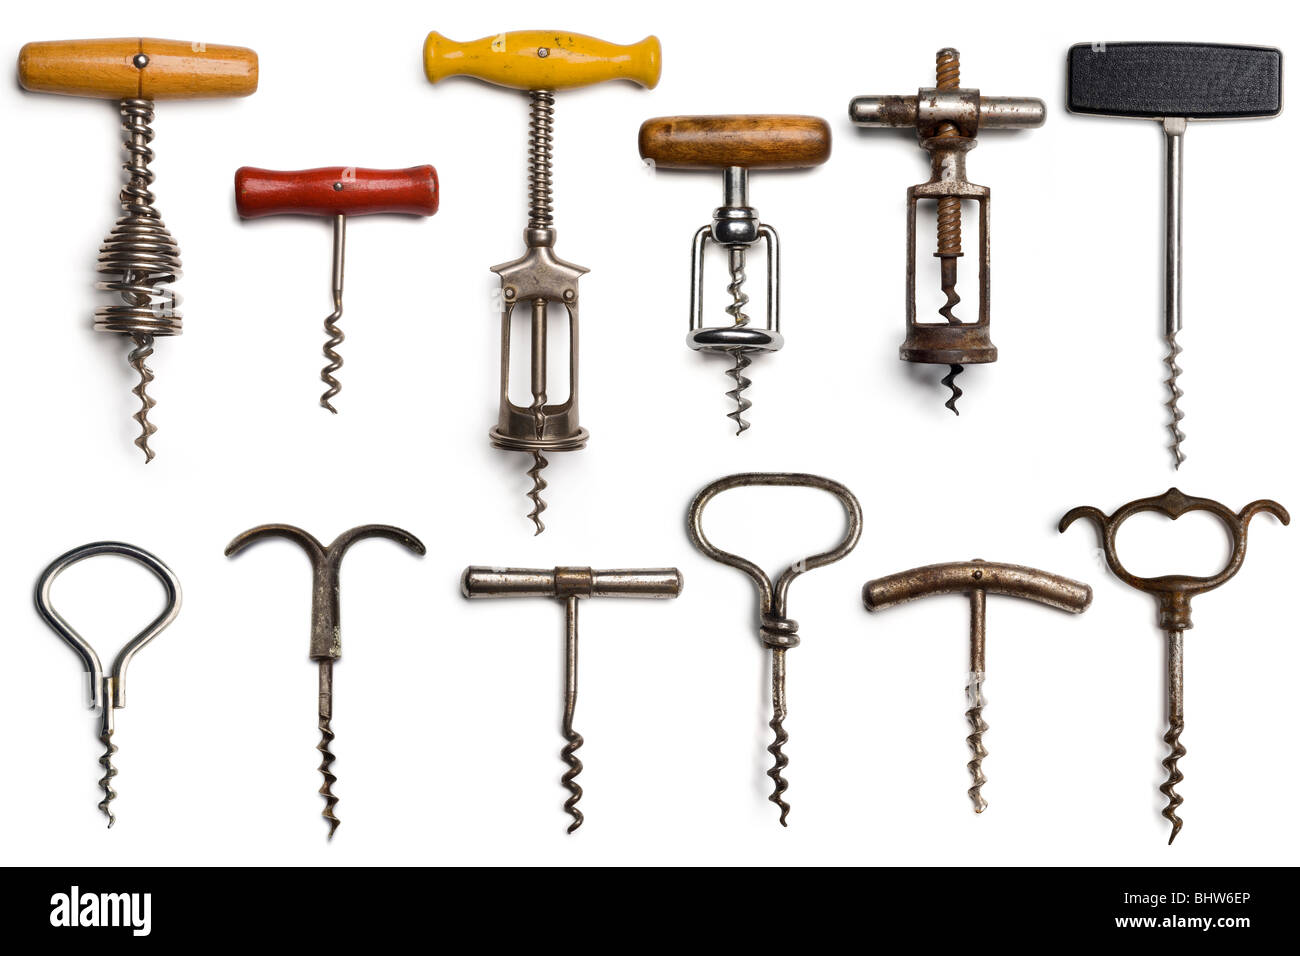 a collection of dozen vintage corkscrews on white Stock Photo